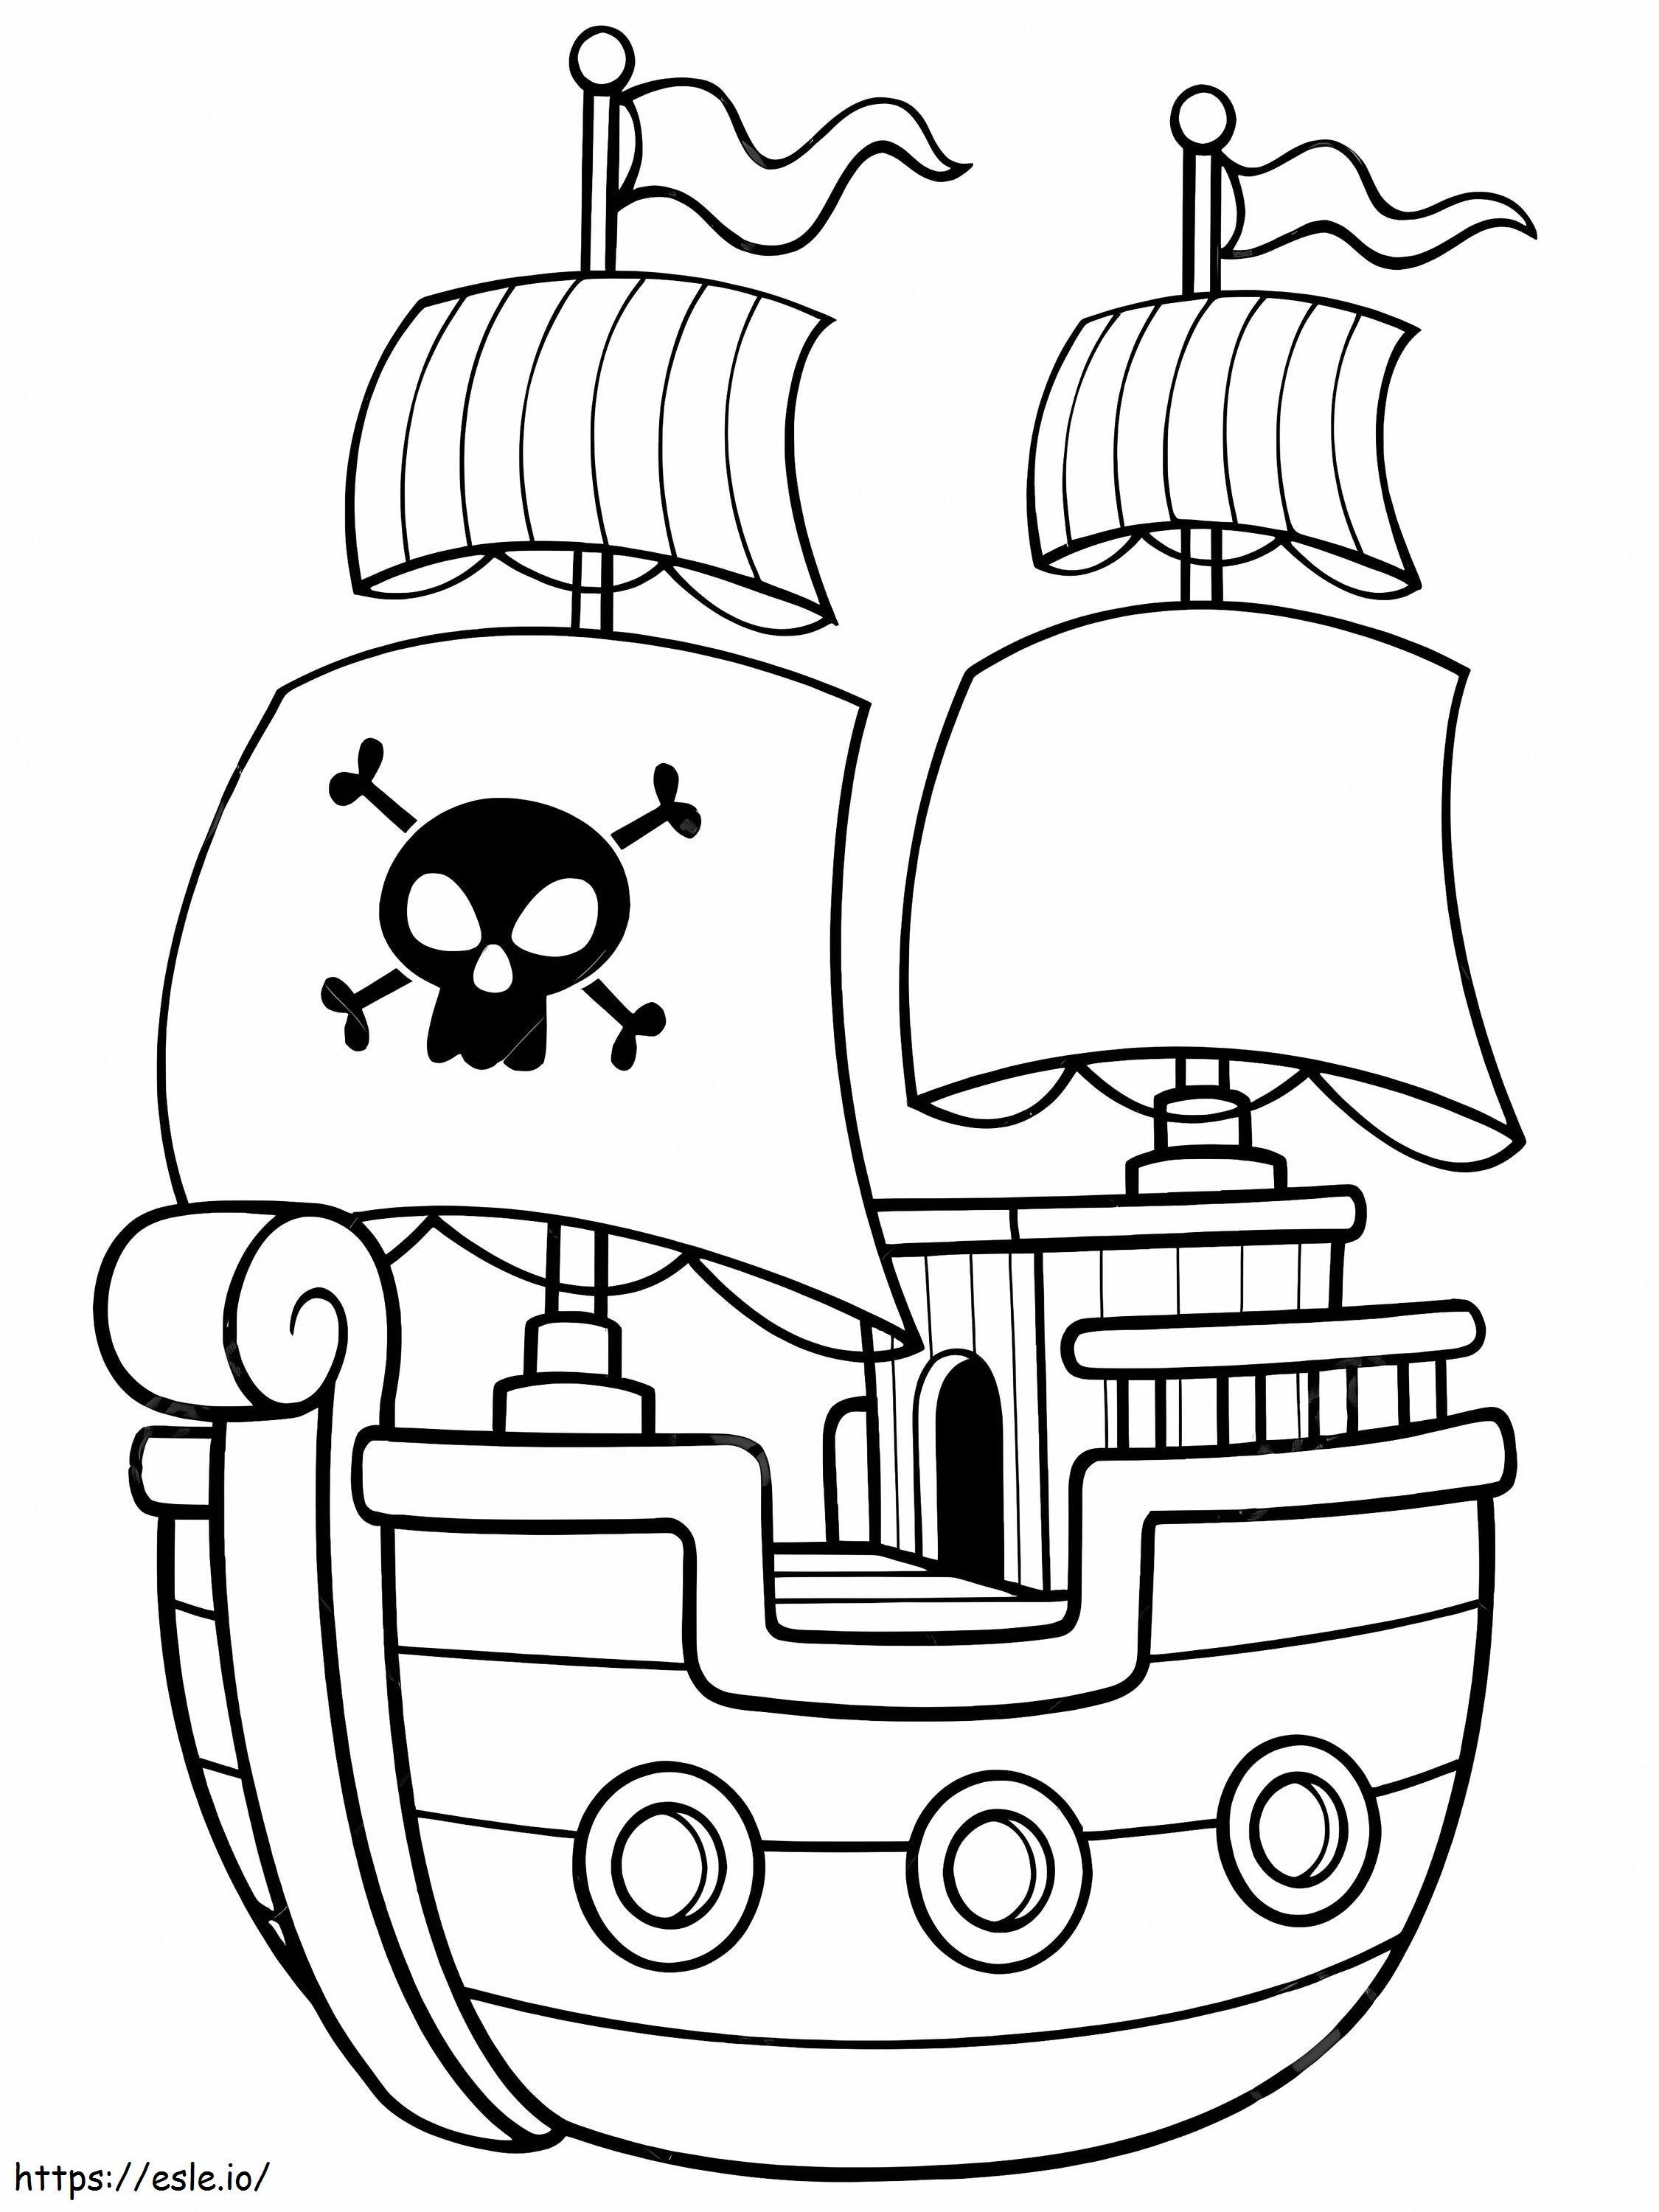 Nave pirata semplice da colorare